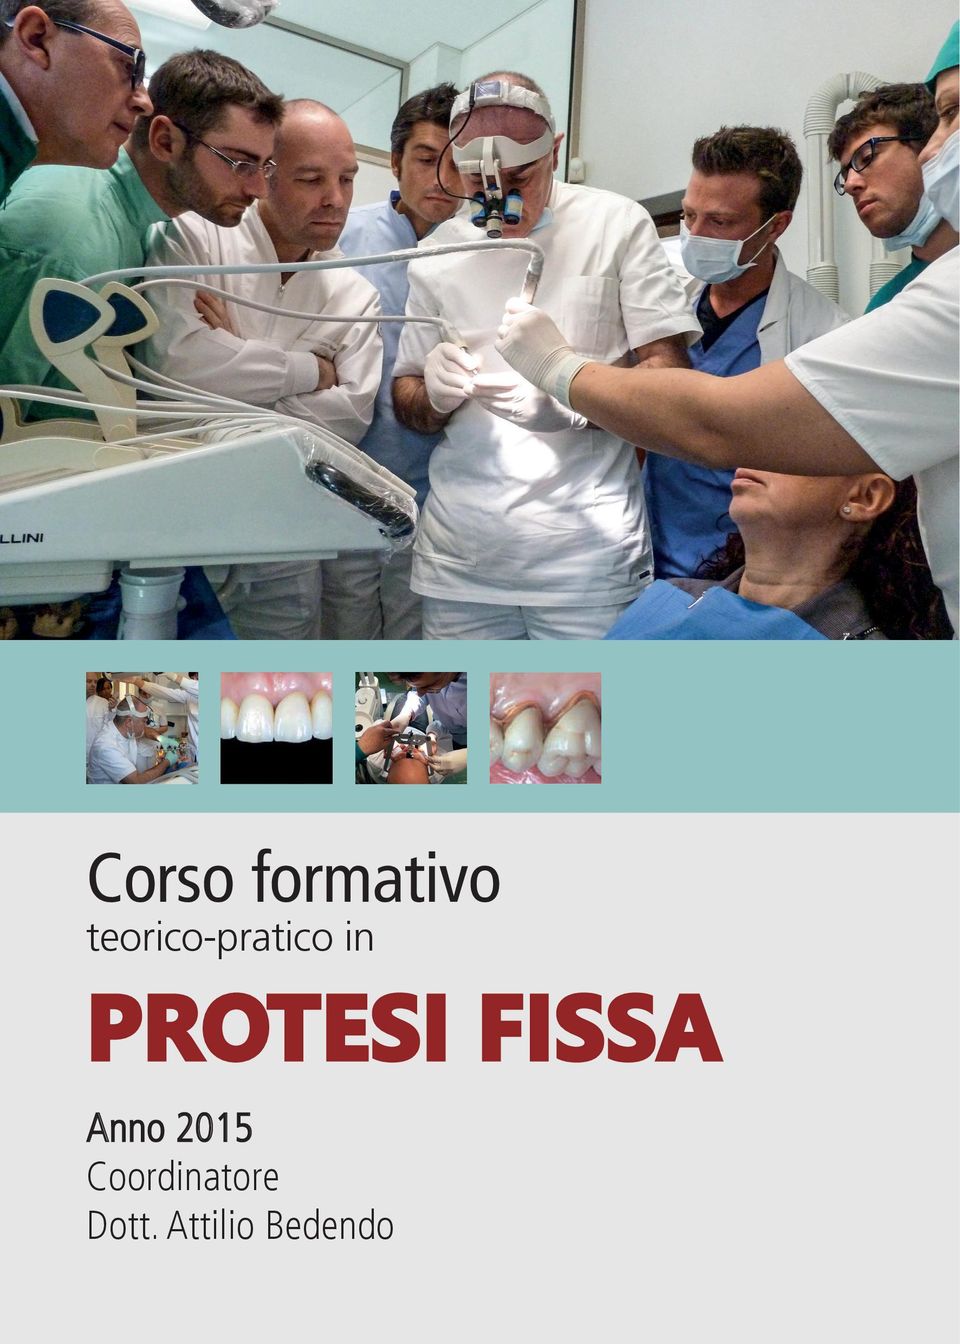 PROTESI FISSA Anno 2015